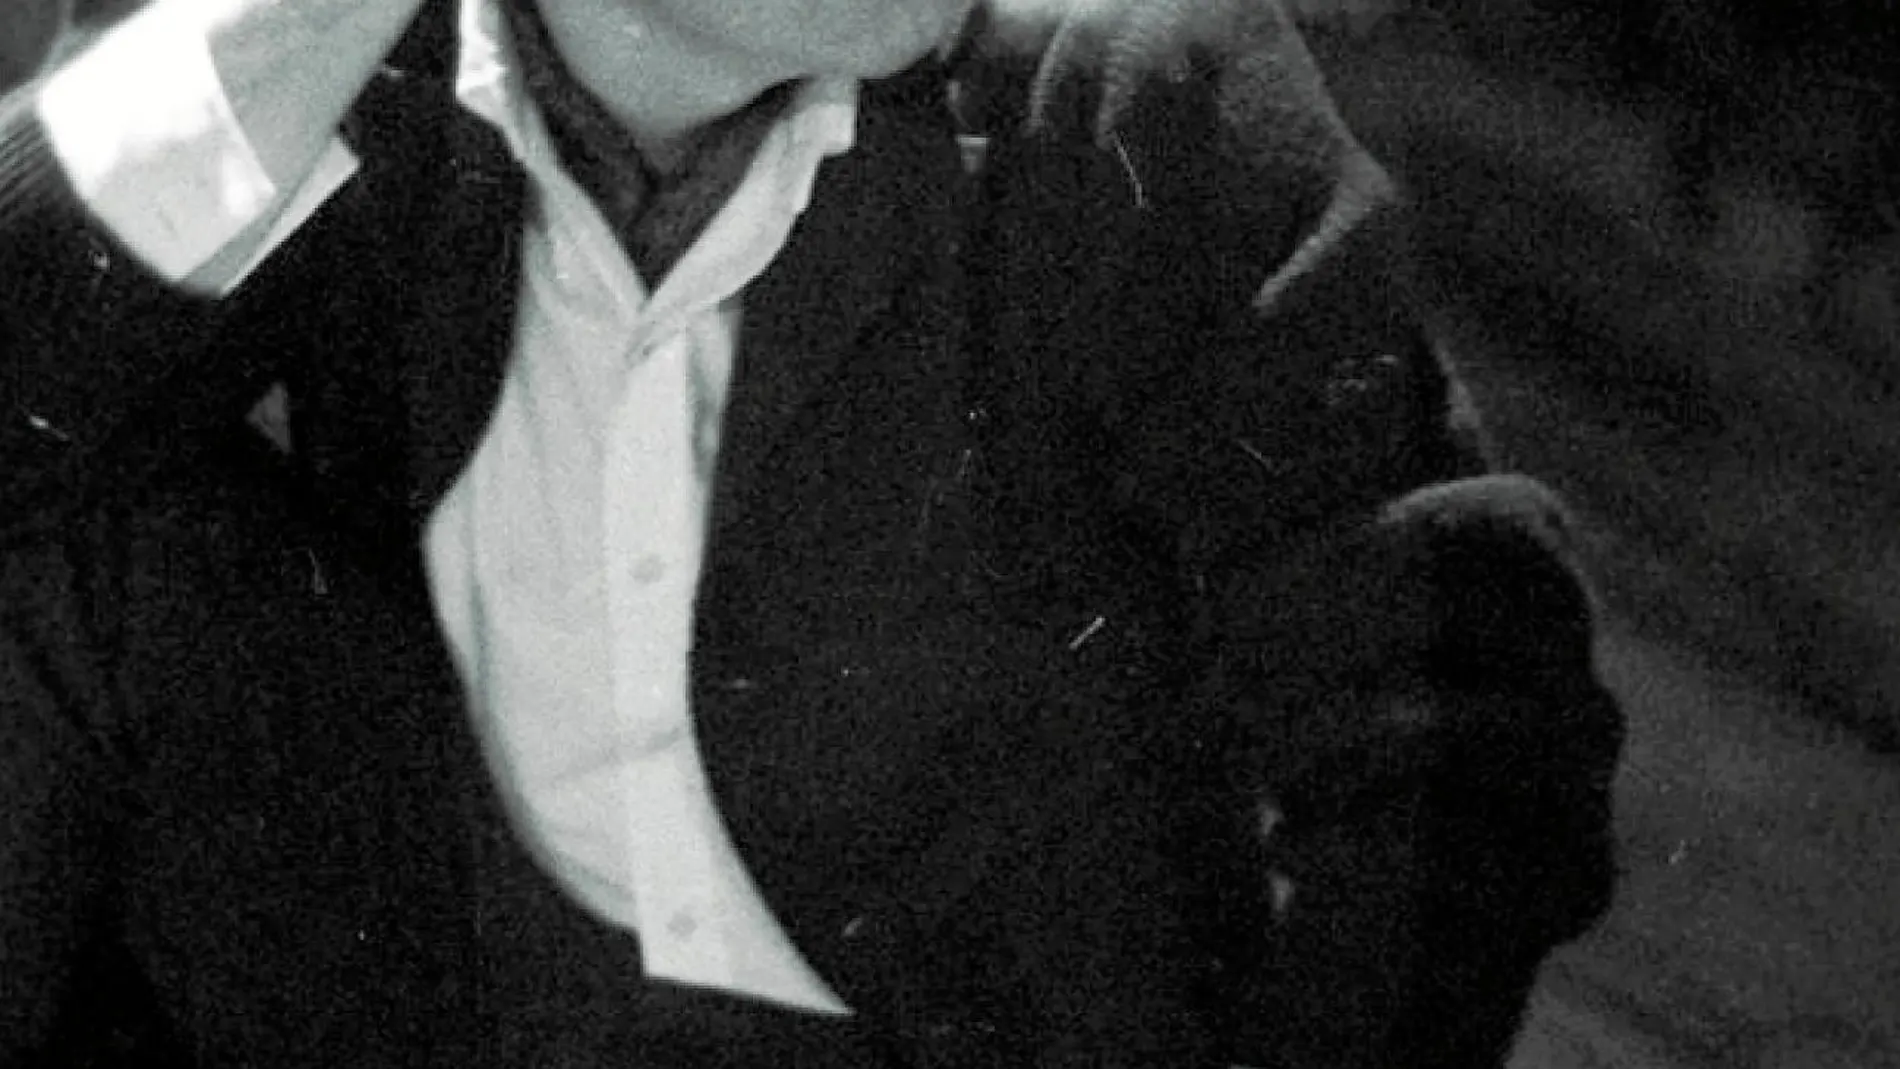 Franco Zeffirelli, en una imagen de archivo